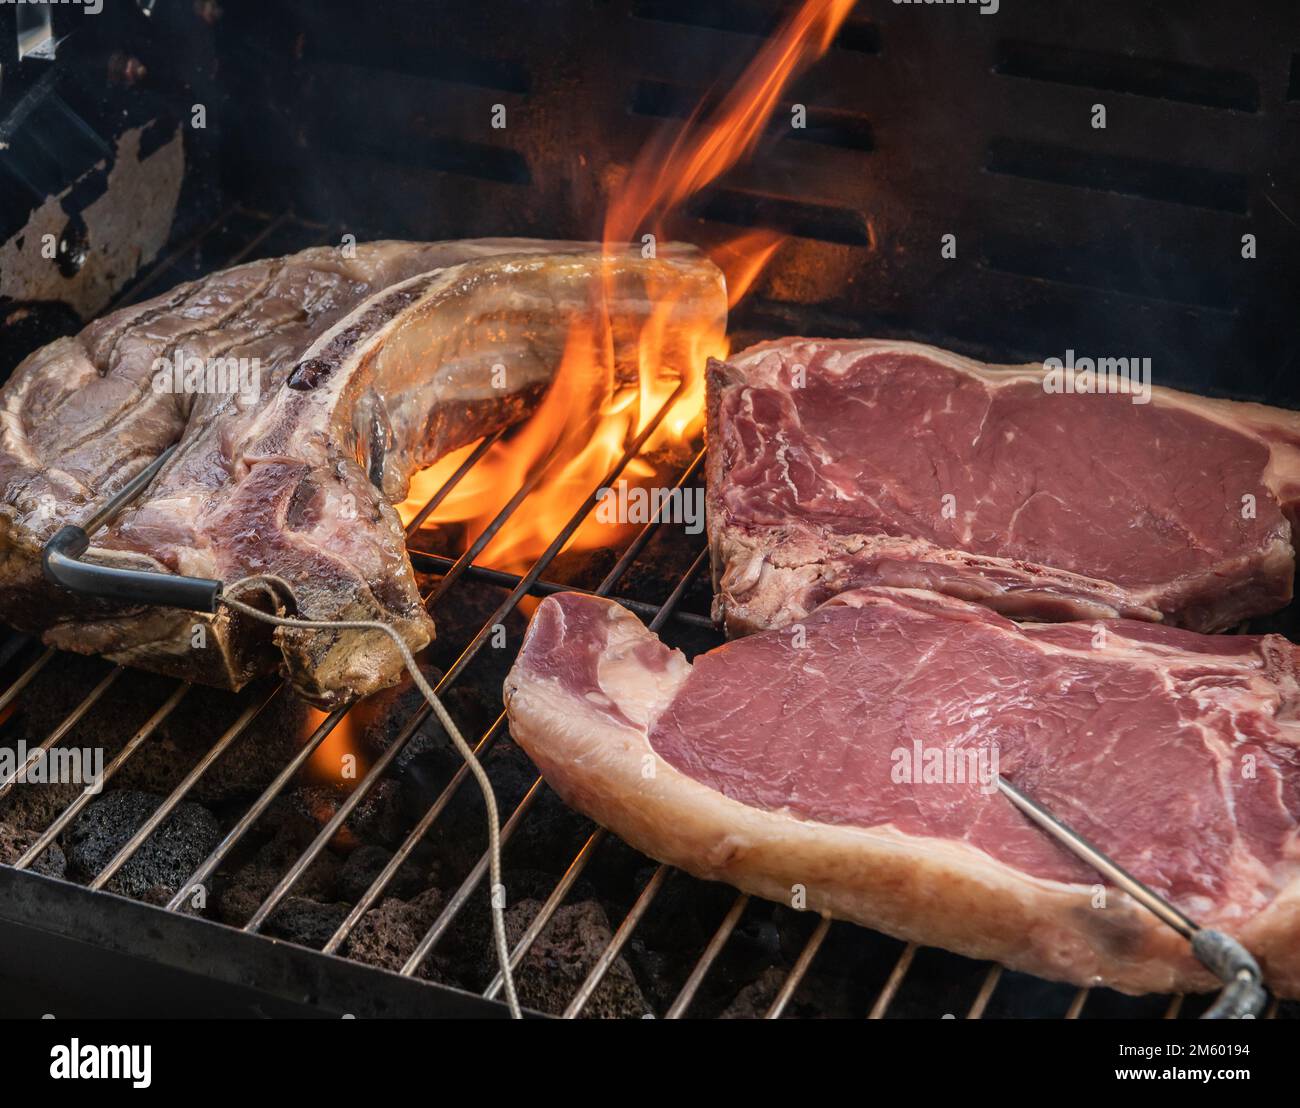 Steak de t-bone grillé (steak de bœuf) sur un barbecue avec thermomètre à viande. Focus sélectif - Trentin-Haut-Adige, nord de l'Italie - Europe Banque D'Images